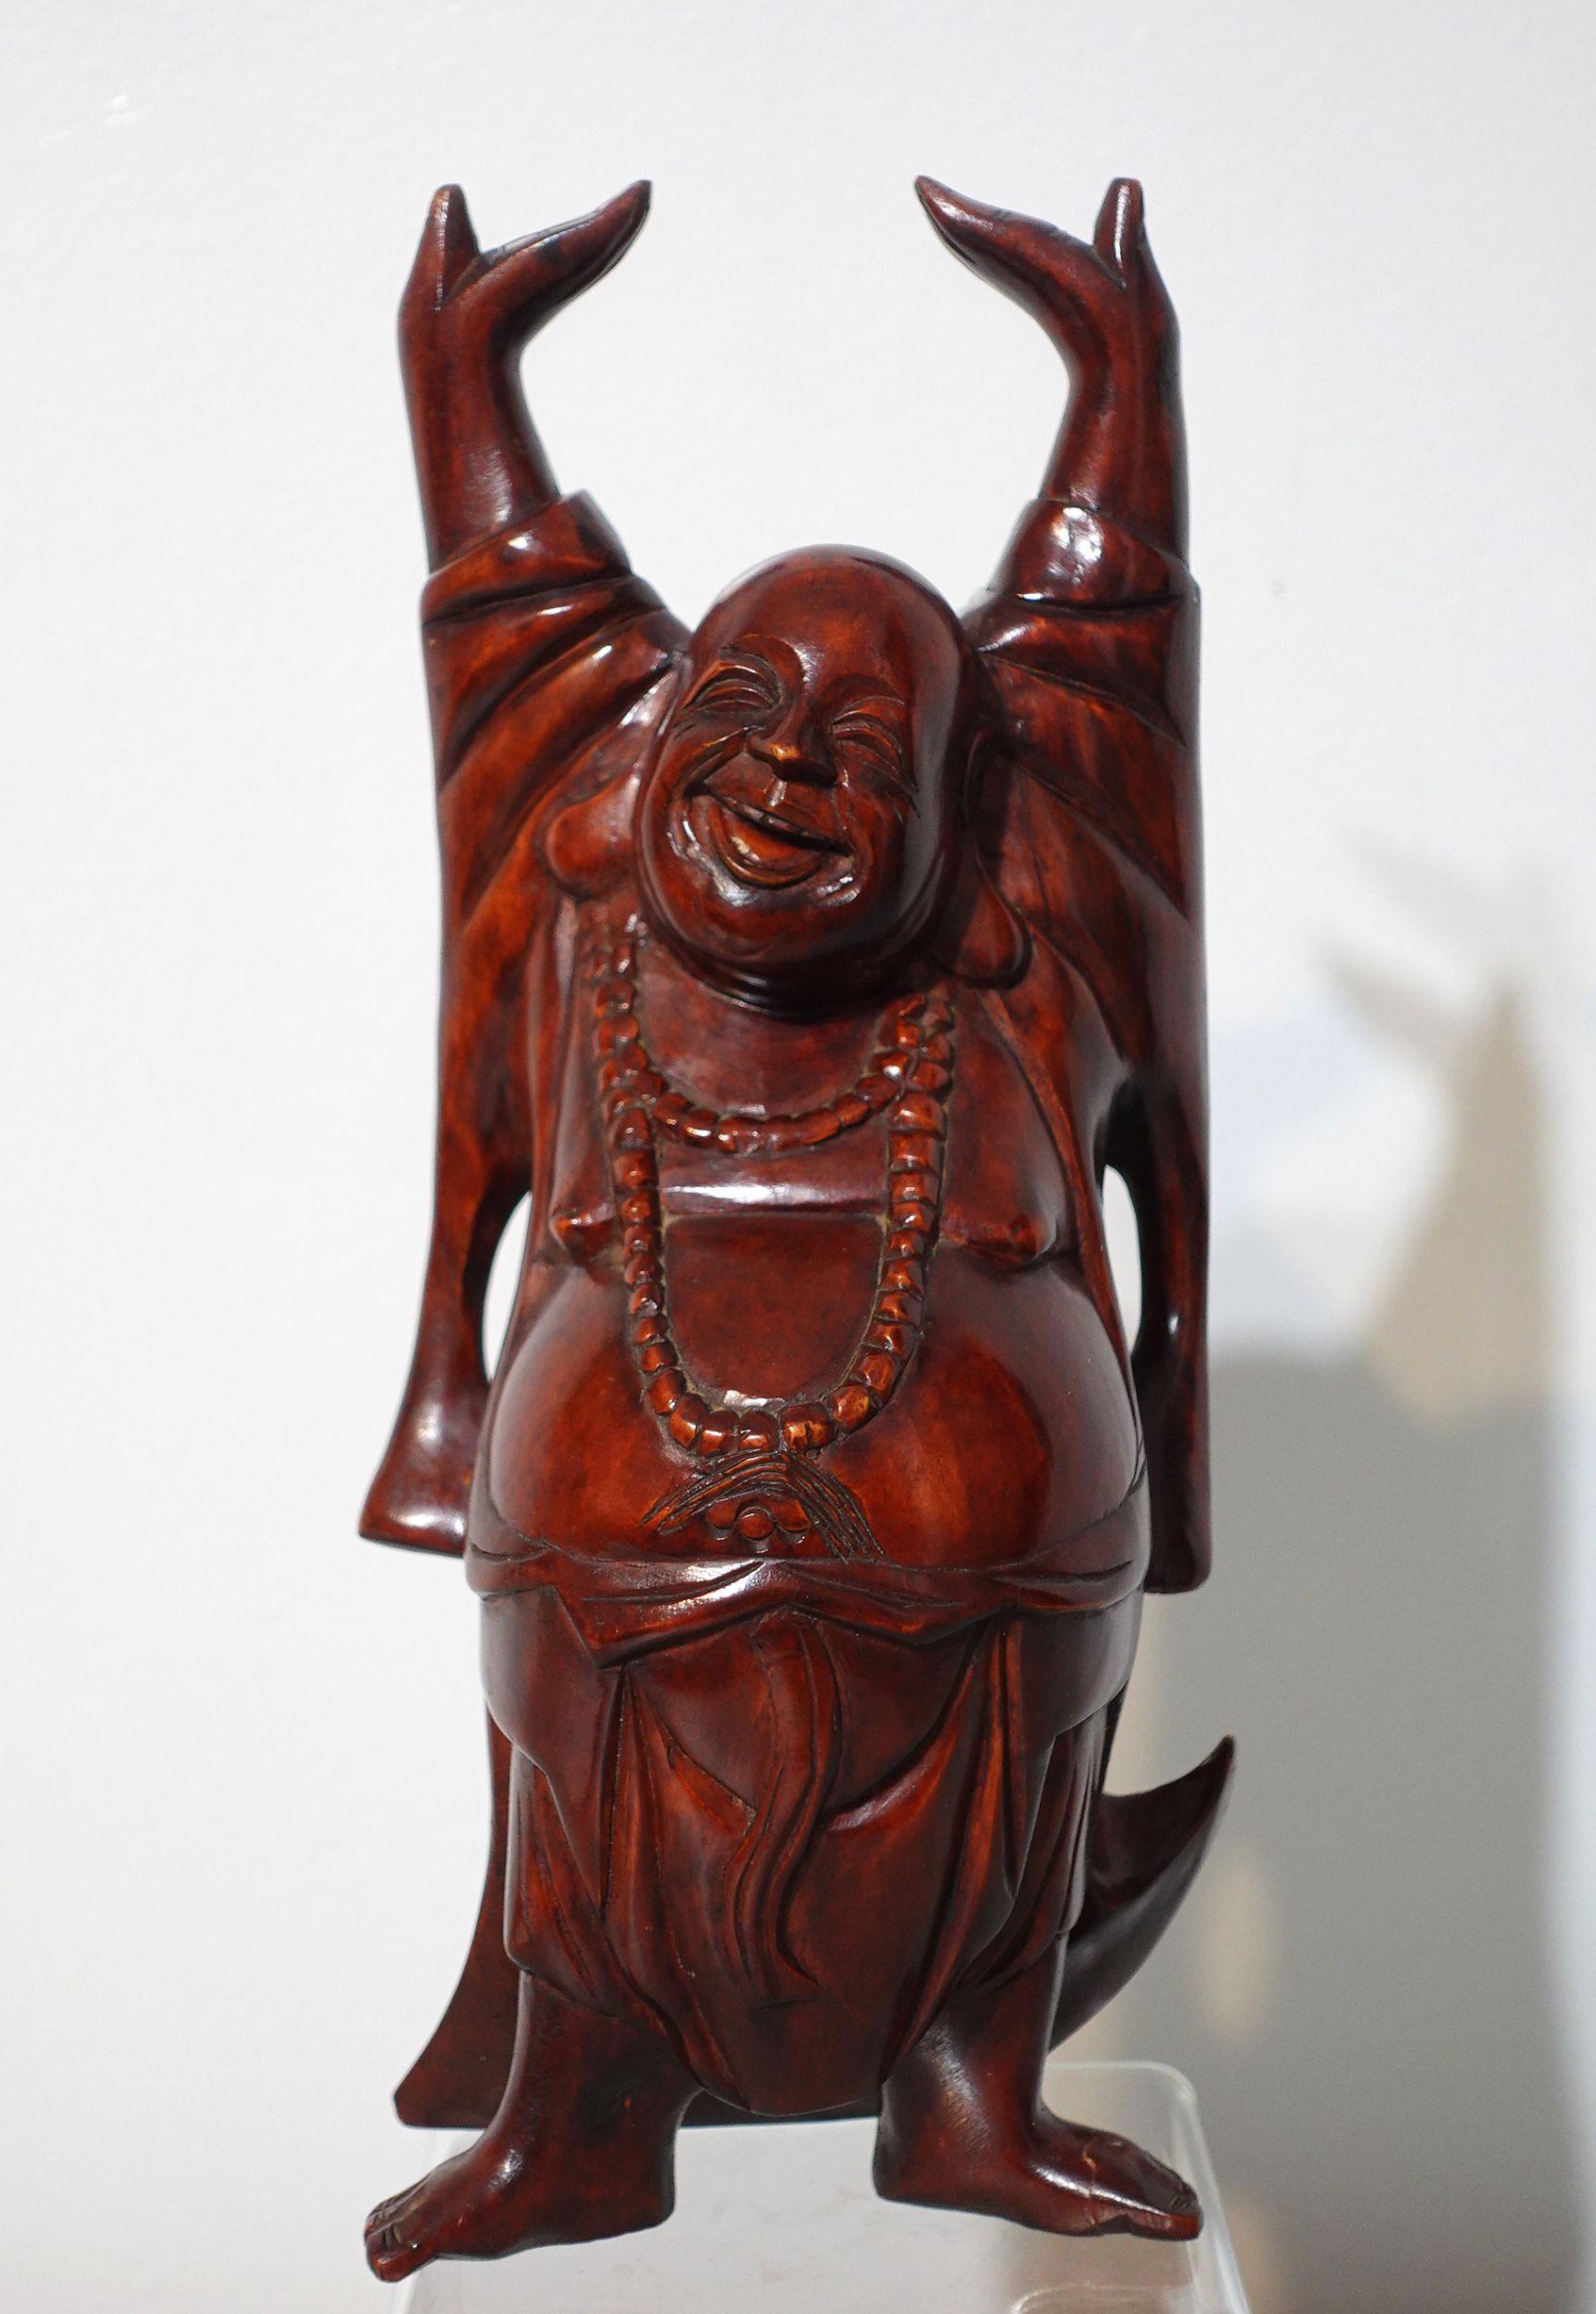 Un Bouddha heureux en bois sculpté, très heureux.